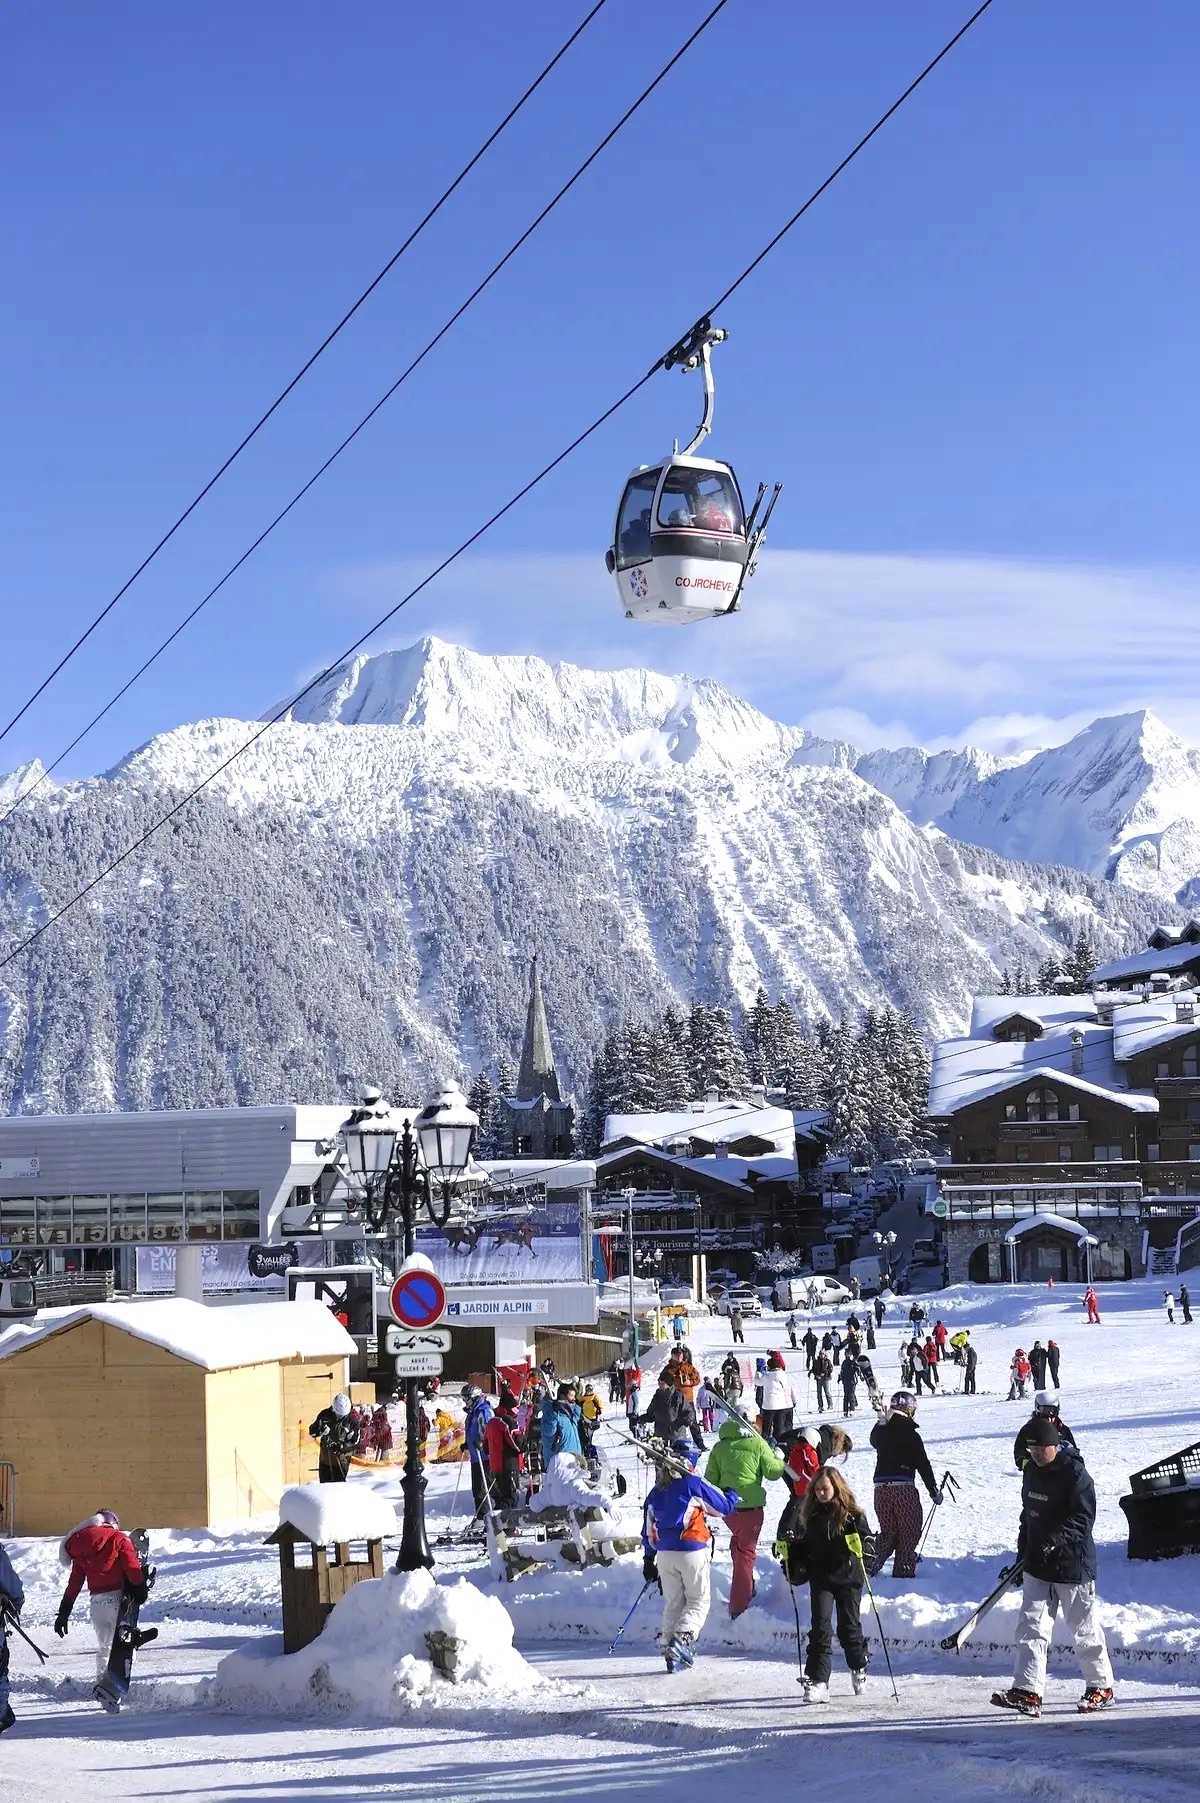 Khu nghỉ dưỡng trượt tuyết cho giới siêu giàu - ảnh 7